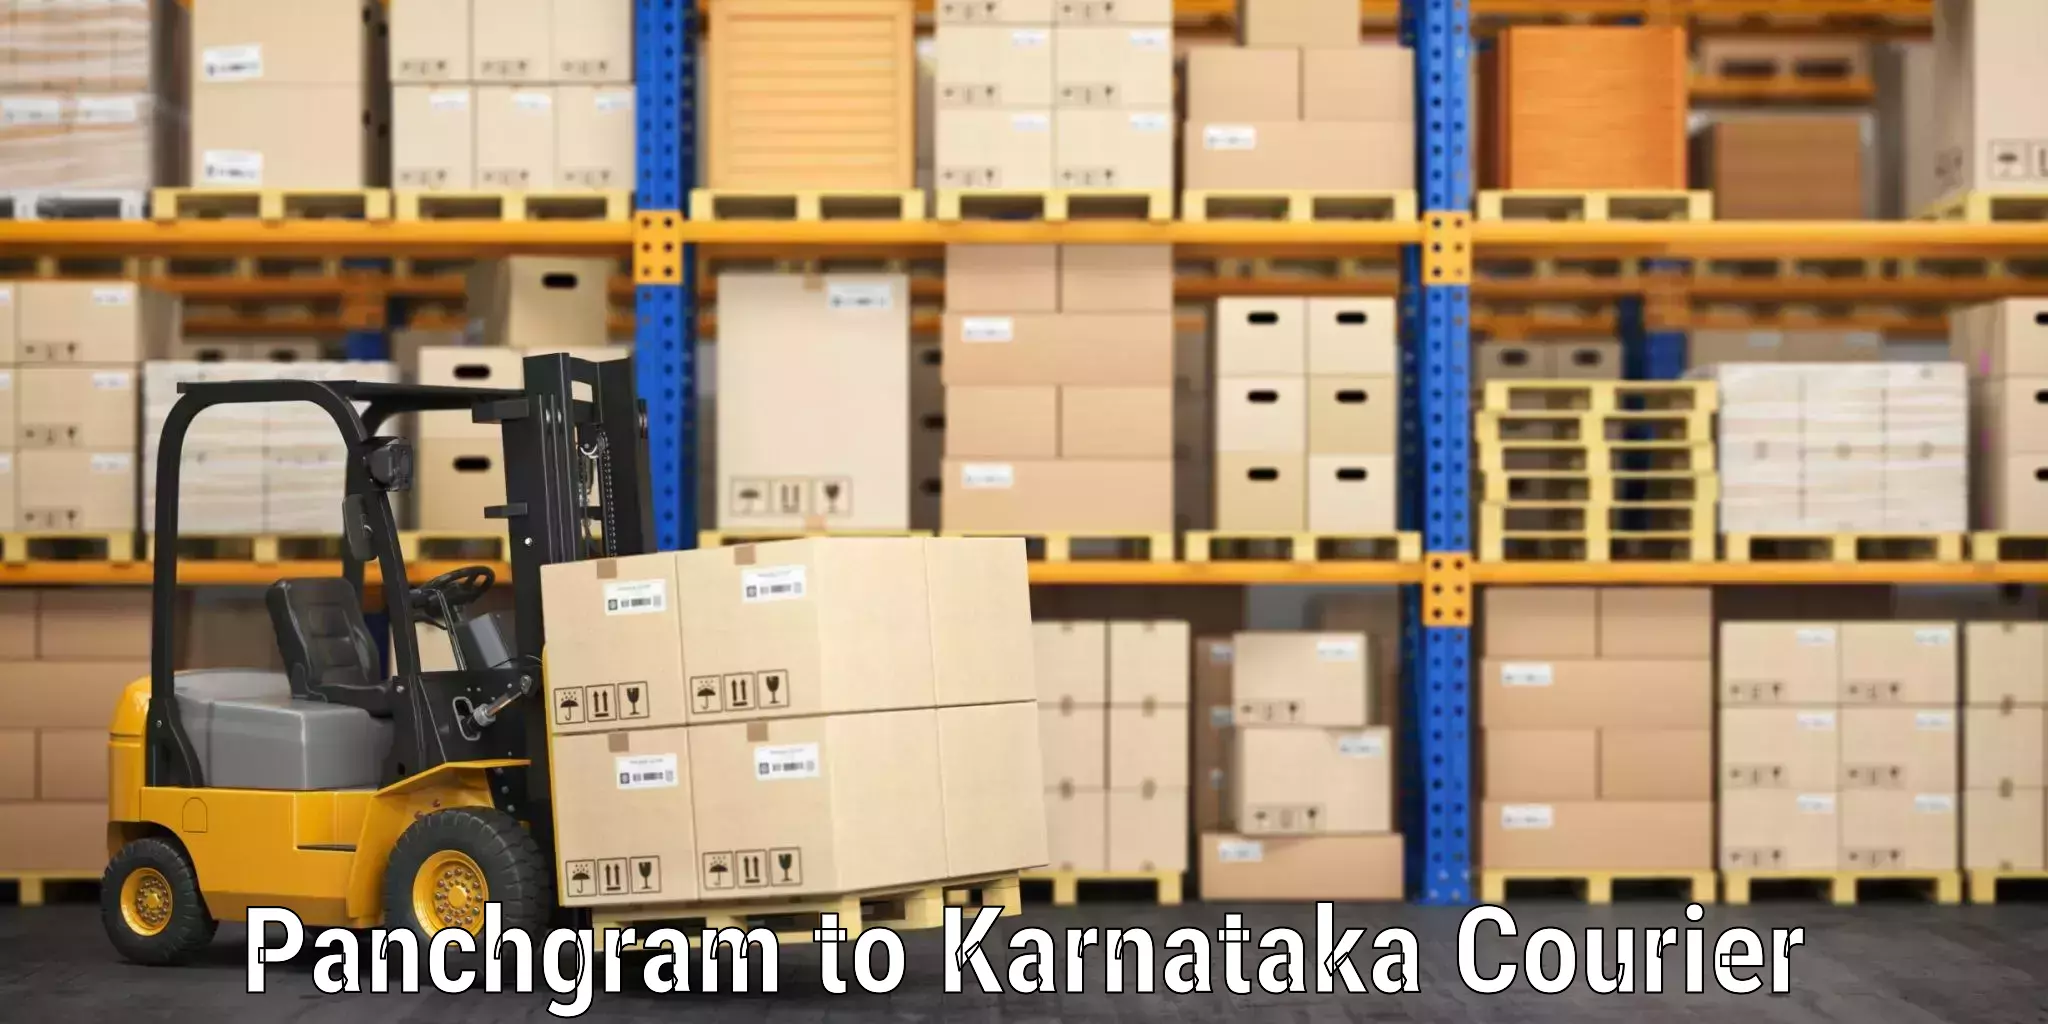 Baggage transport professionals Panchgram to Karnataka